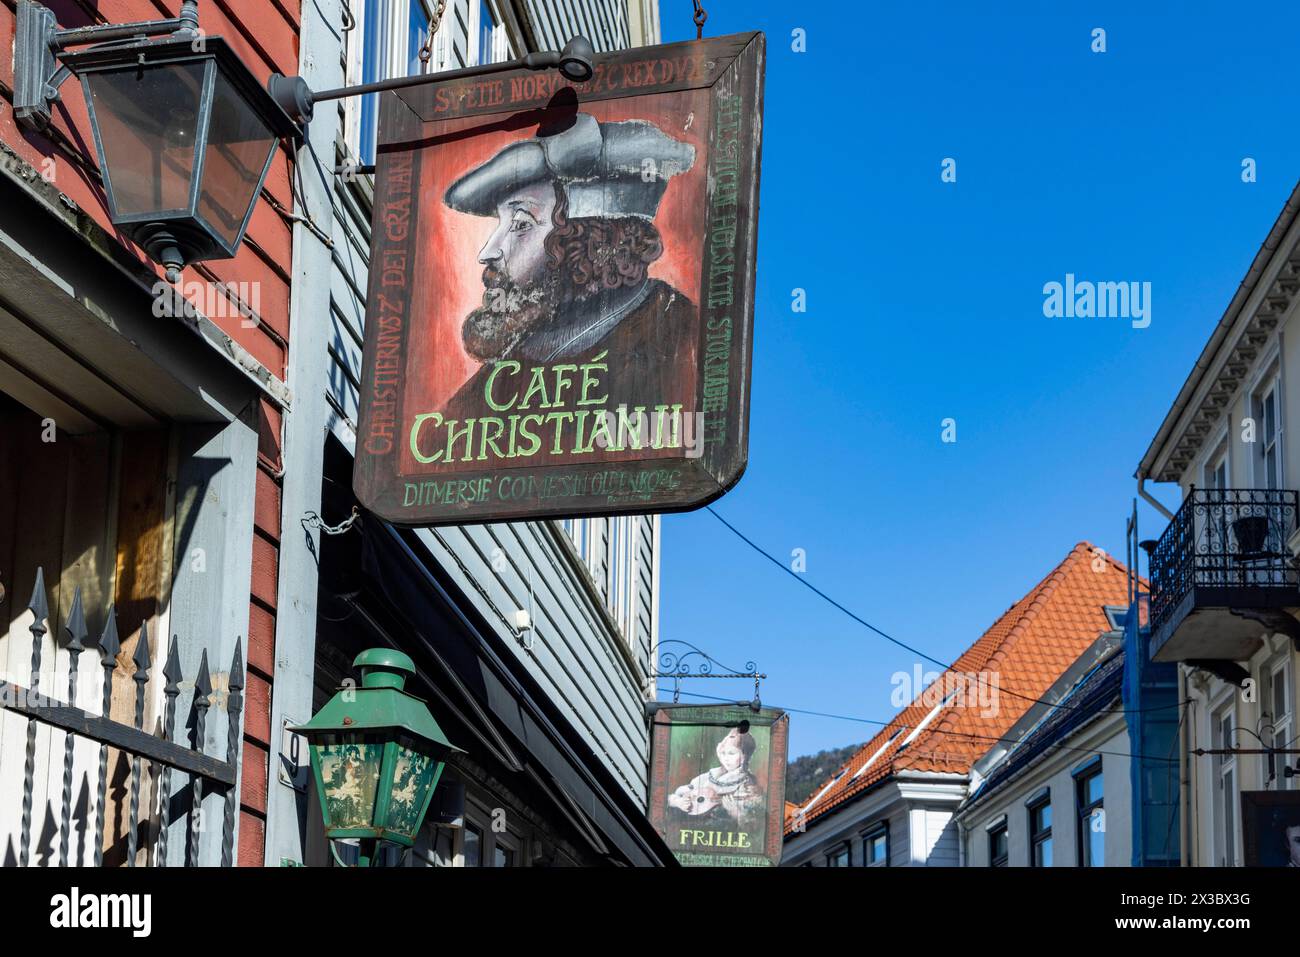 Cafe, cartello, Bergen, provincia di Vestland, Norvegia, costa sud-occidentale, Scandinavia, Europa settentrionale Foto Stock